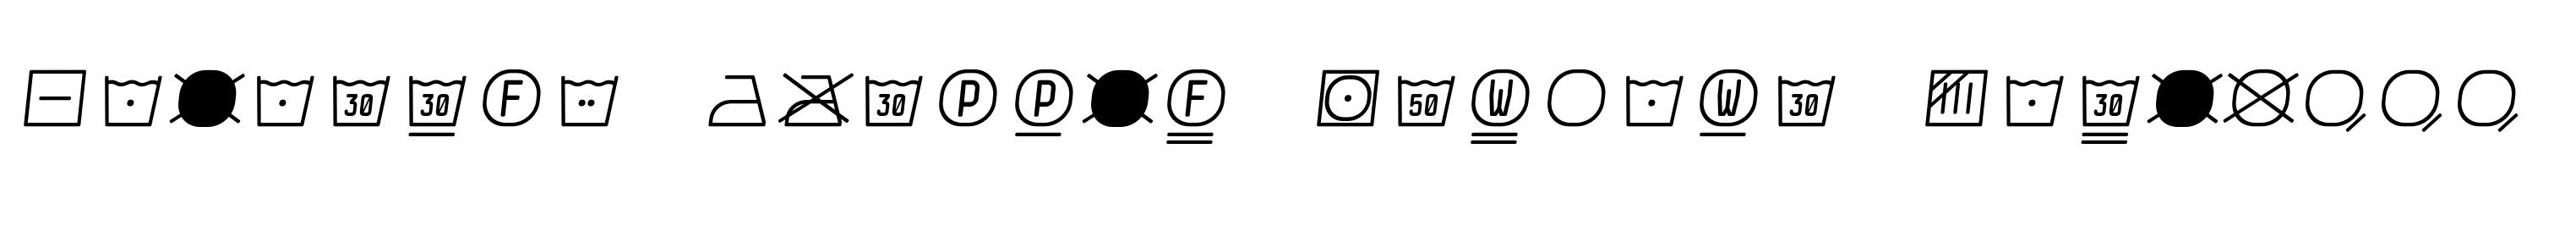 Monostep Washing Symbols Rounded Thin Italic